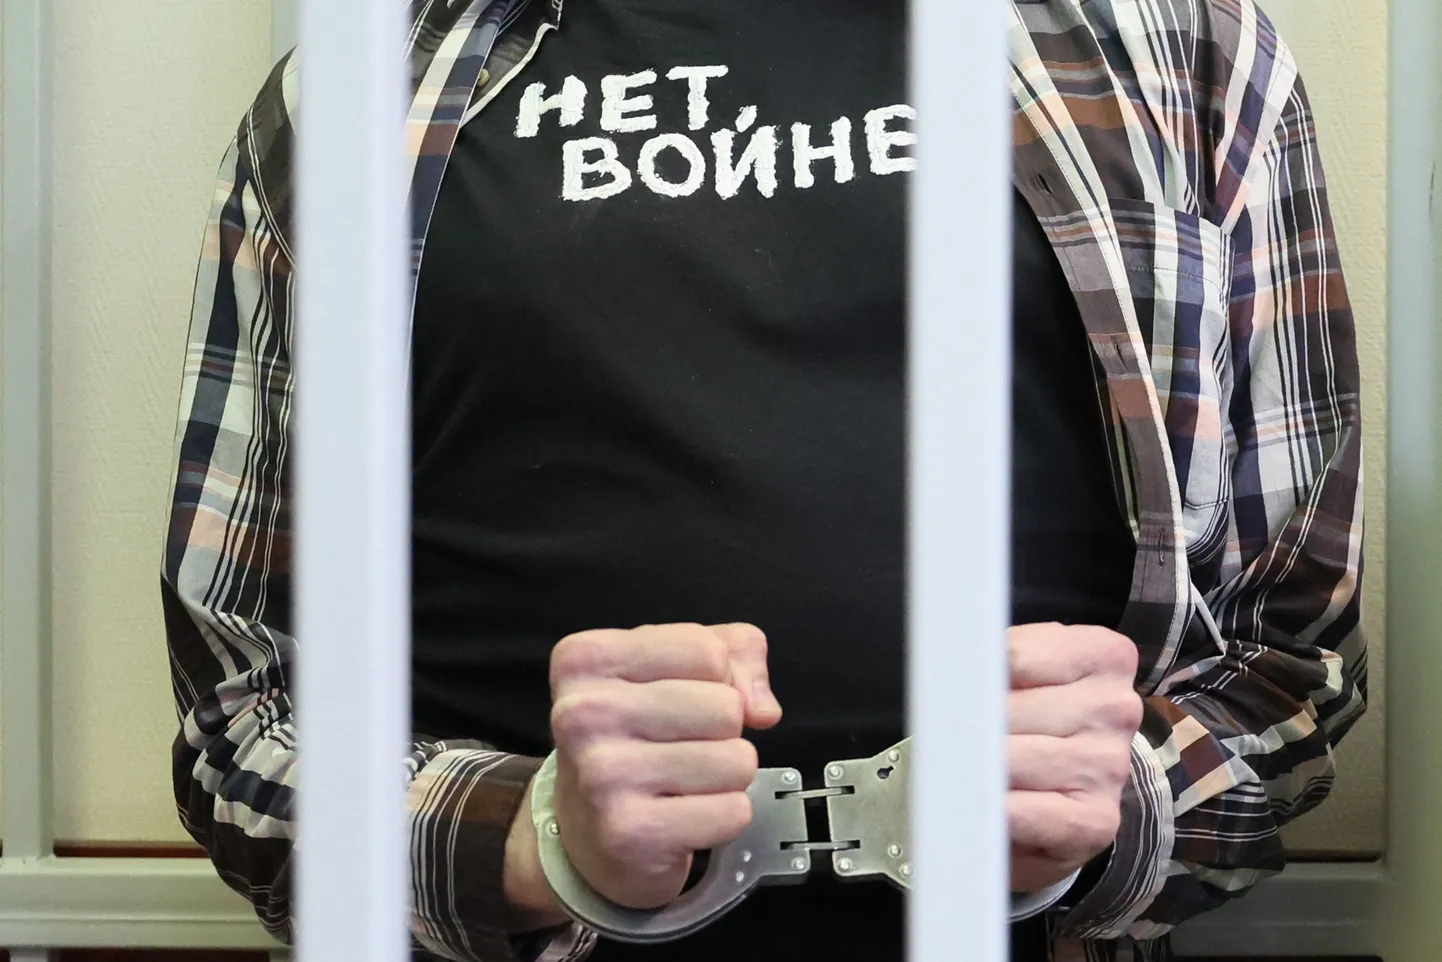 Vene ajakirjanik kohtusaalis sõjavastase T-särgiga. Venemaal on sõja algusest üha agaramalt hakatud sõjavastaseid represseerima. Foto on illustreeriv.